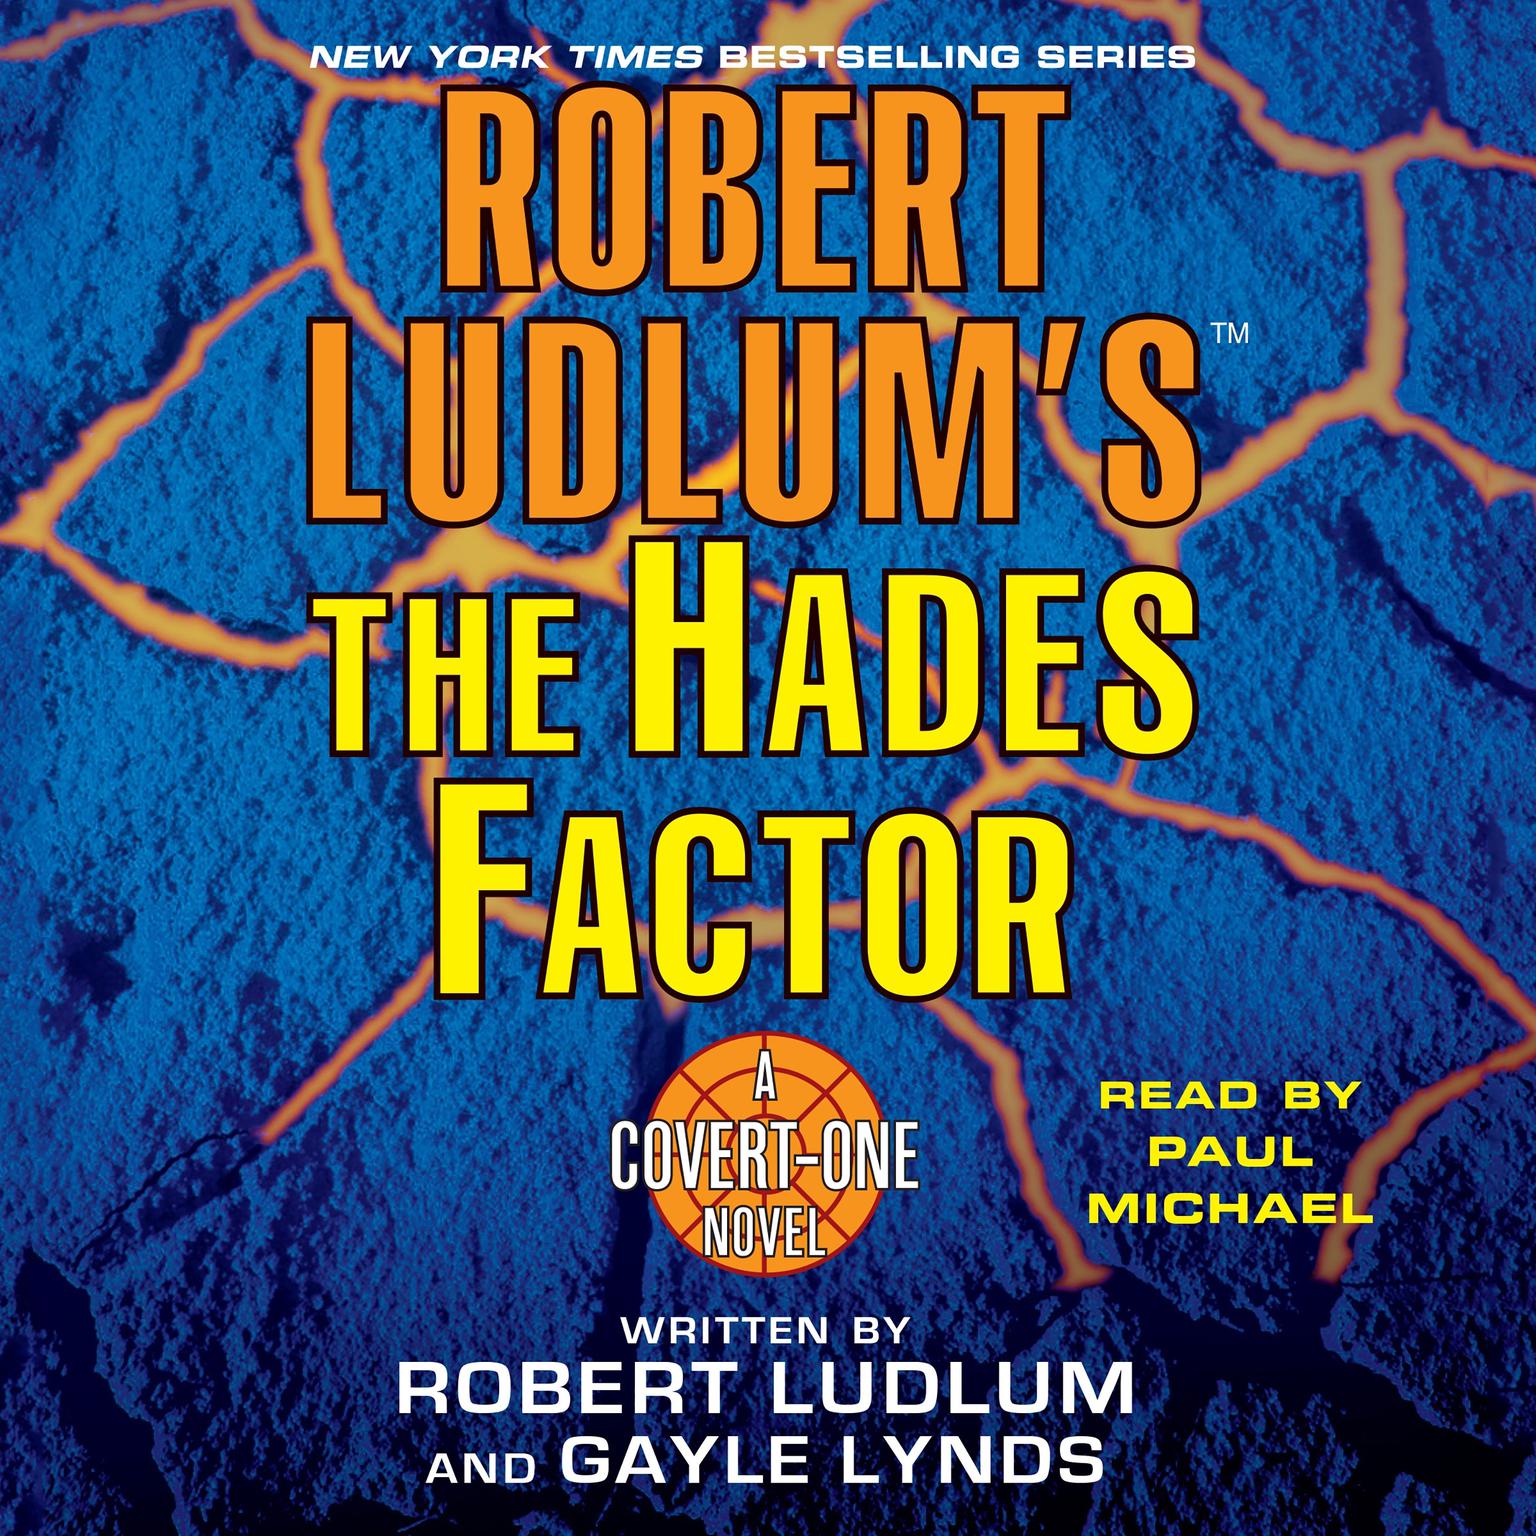 Robert Ludlums The Hades Factor (Abridged): A Covert-One Novel Audiobook, by Robert Ludlum